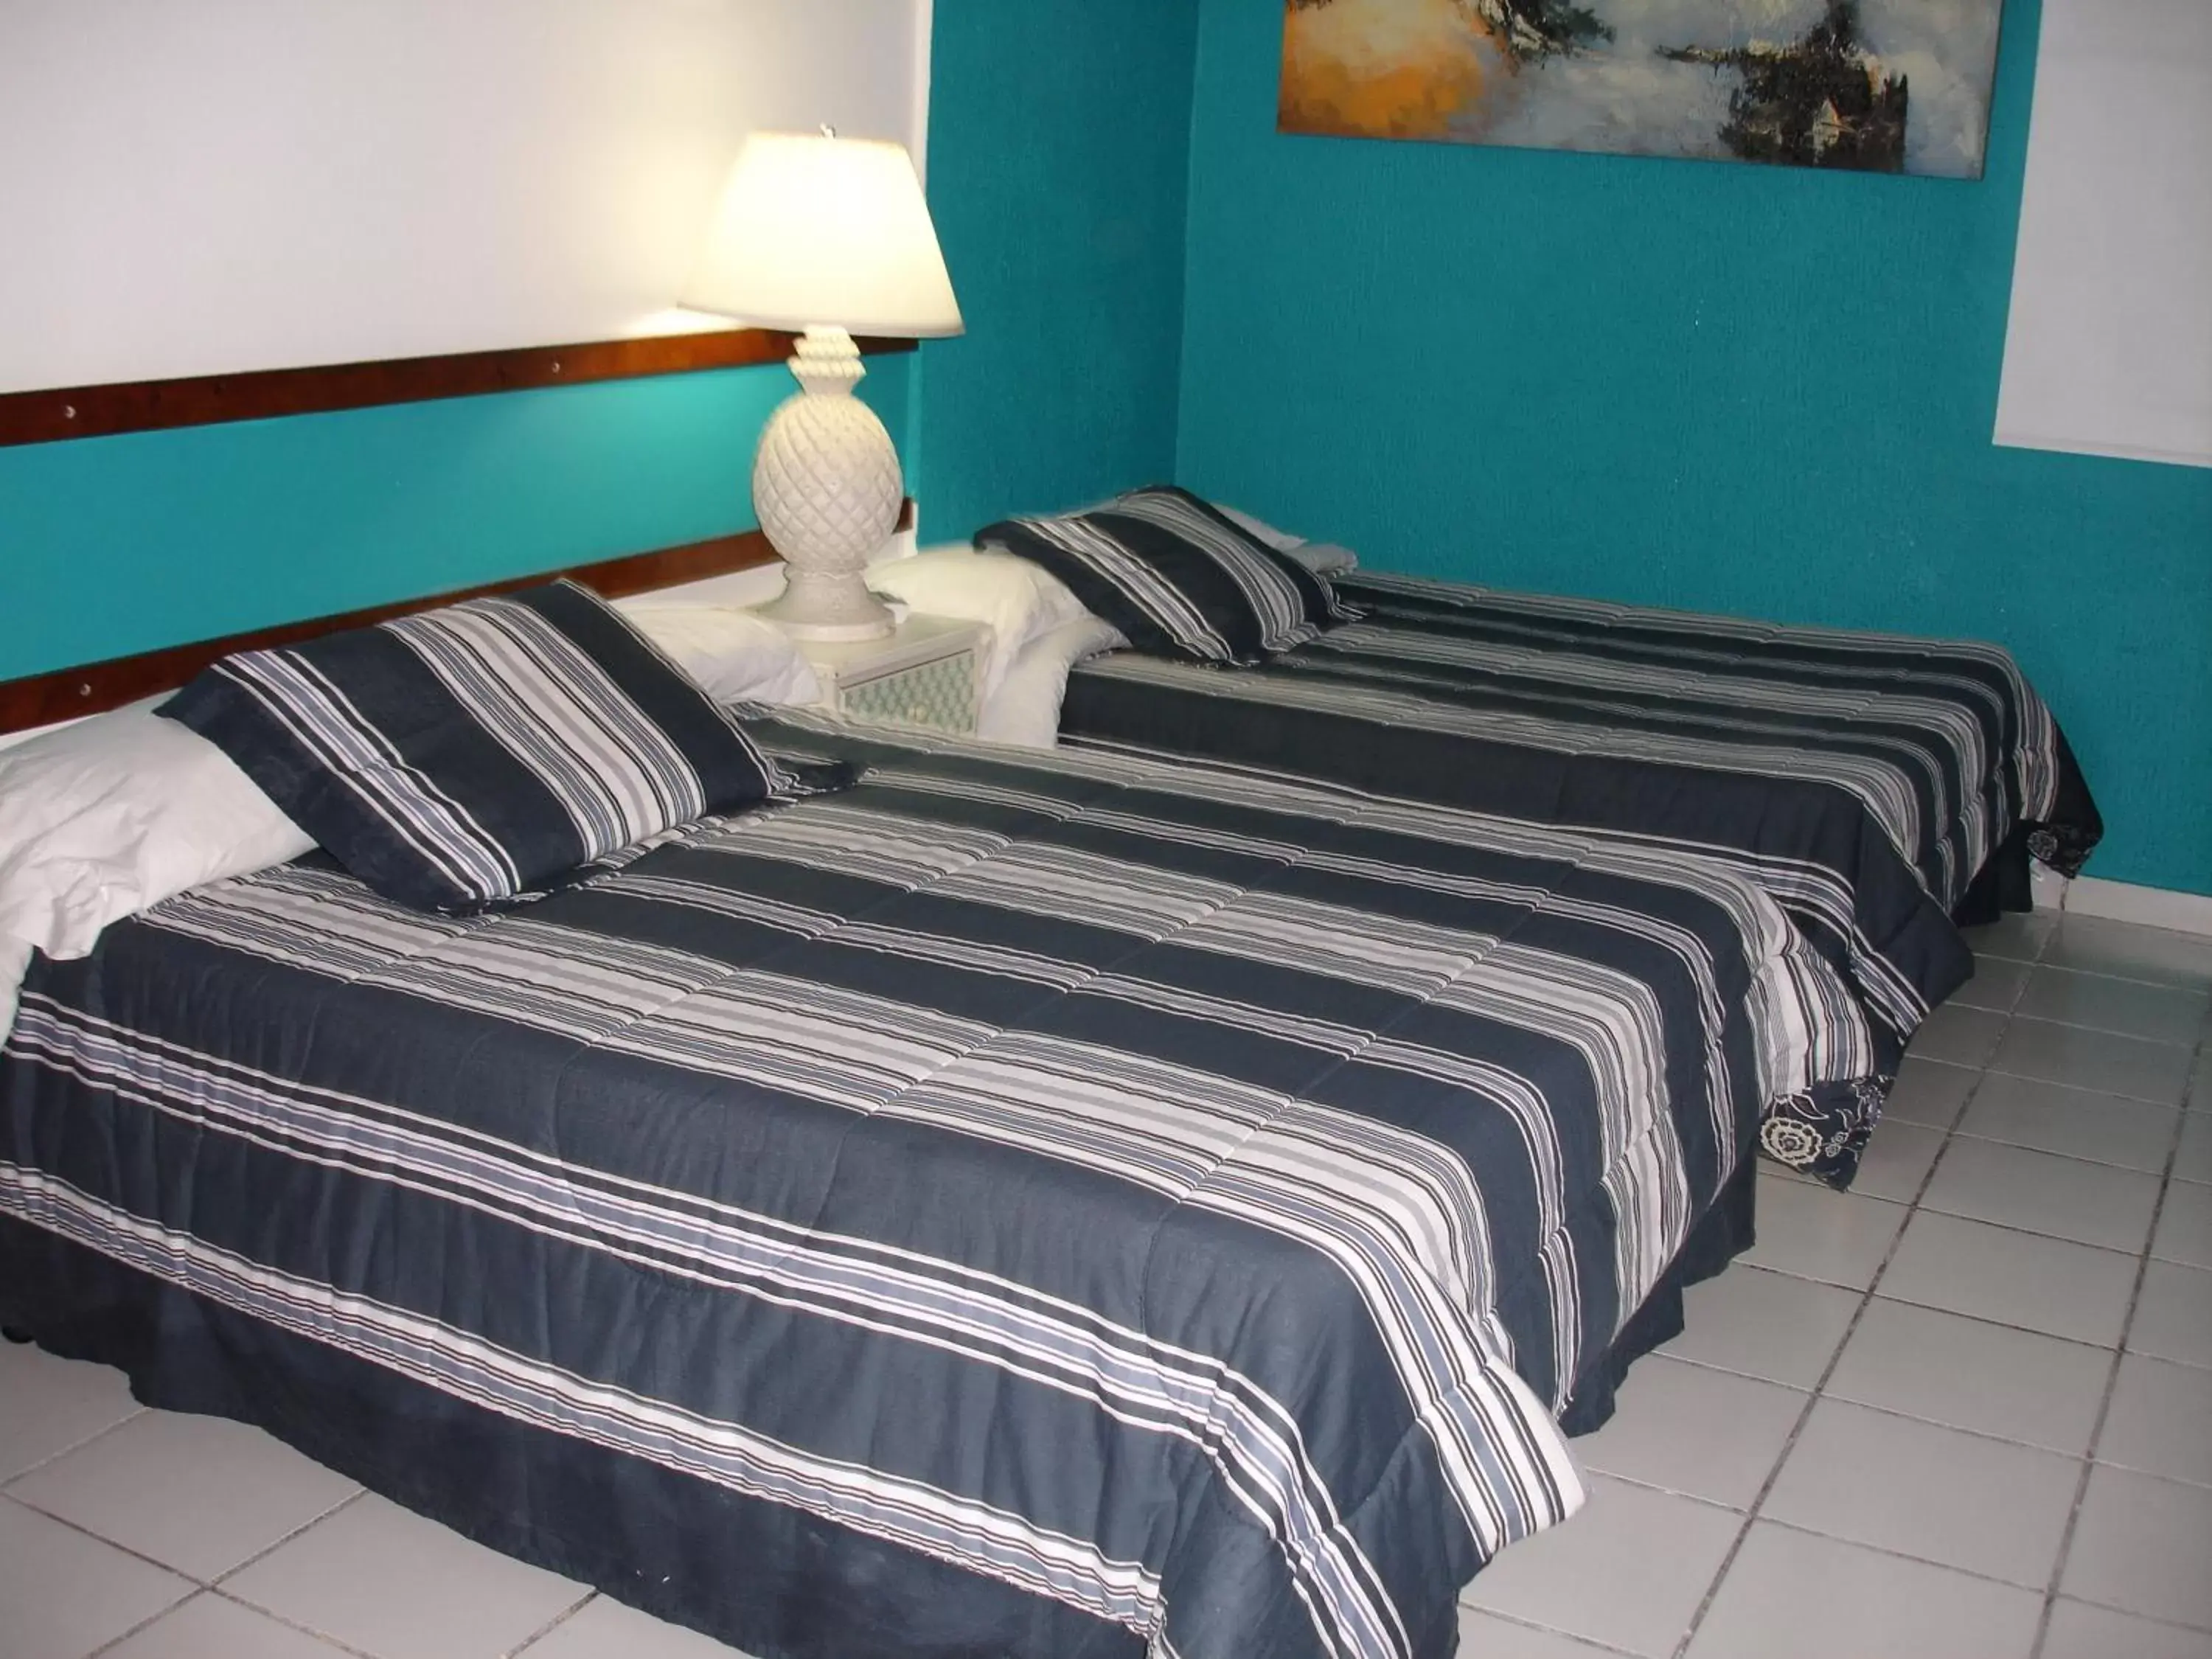 Bed in Dreams Hotel Puerto Rico